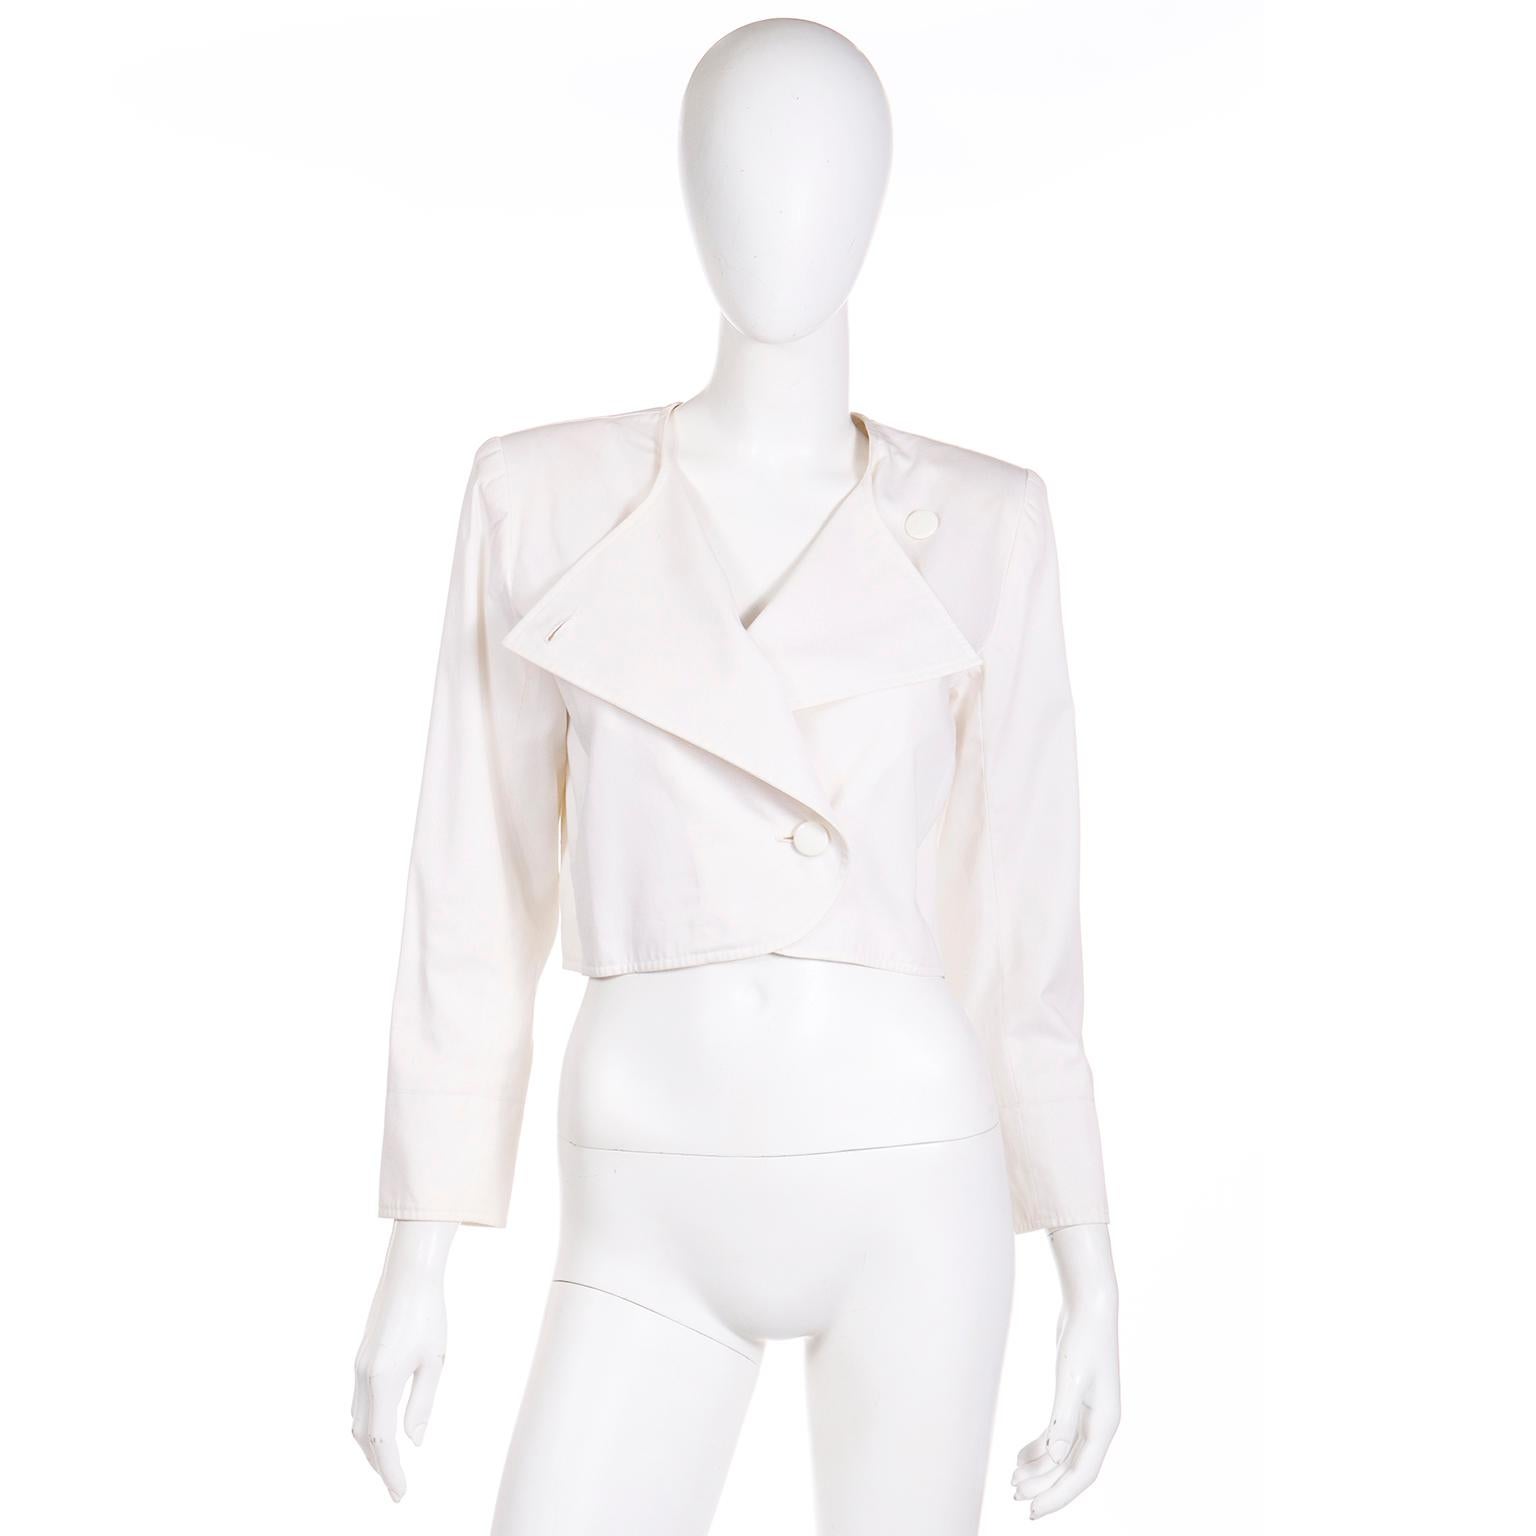 Cette veste courte vintage Yves Saint Laurent des années 1980 est en coton blanc luxueux, parfait pour l'été !  Cette veste est dotée de pad aux épaules pour plus de structure, et d'une coupe croisée parfaitement carrée. Vous pouvez choisir de la